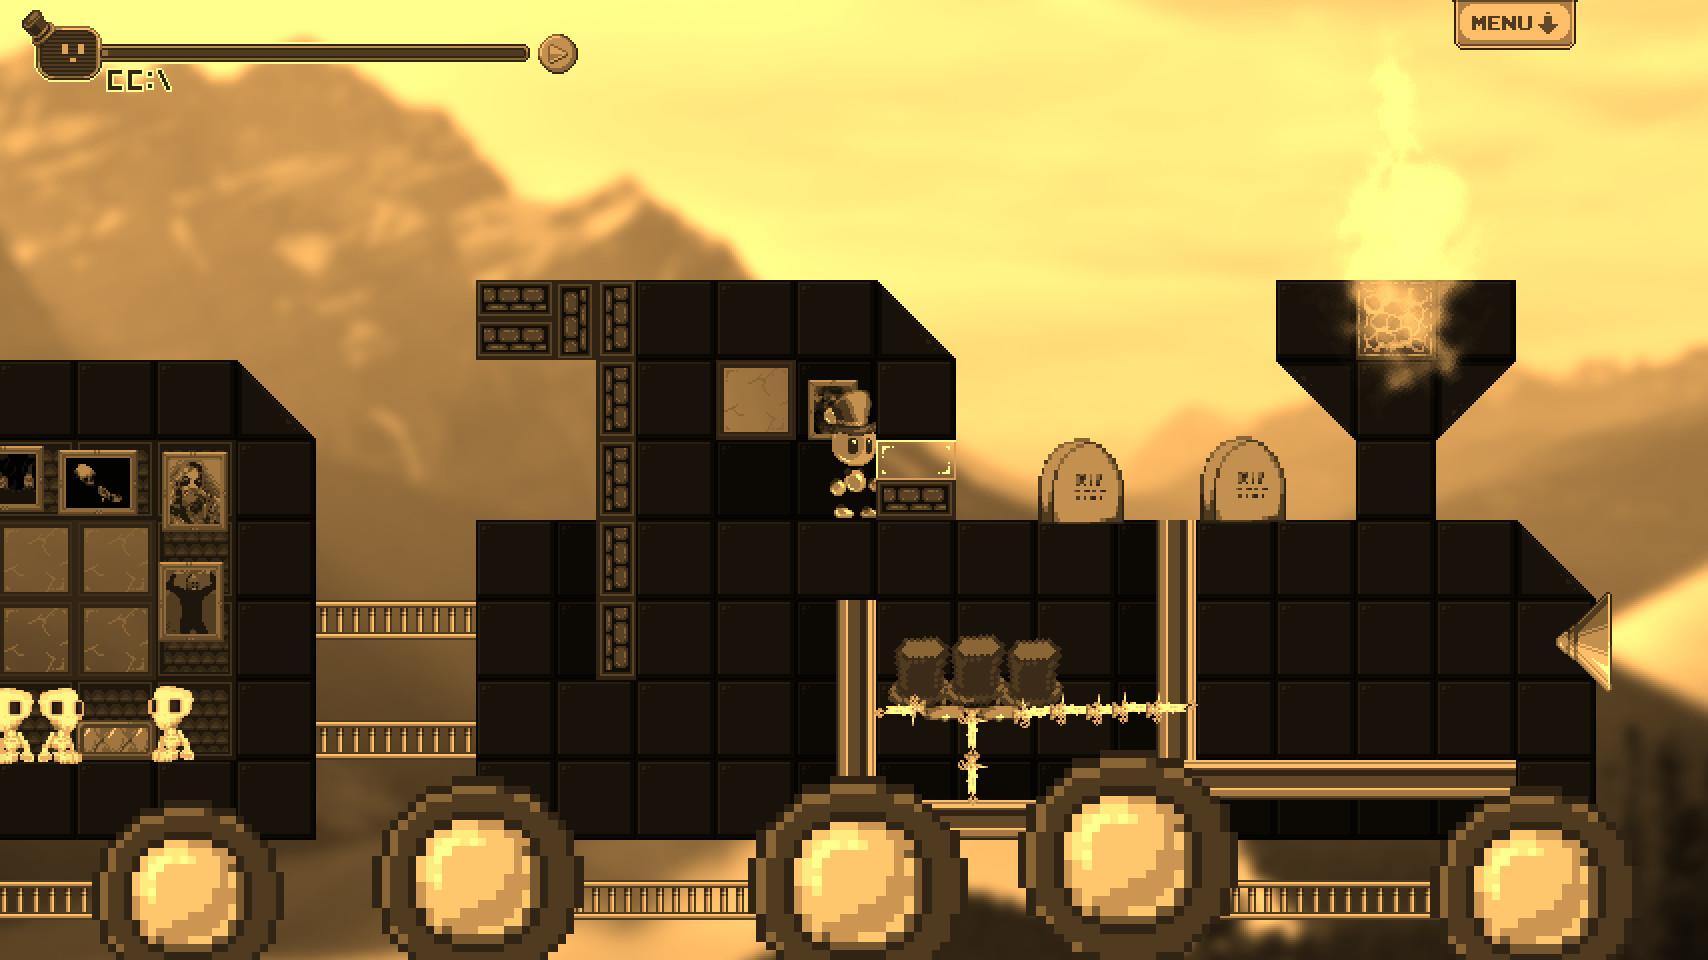 Screenshot №1 from game Cranium Conundrum